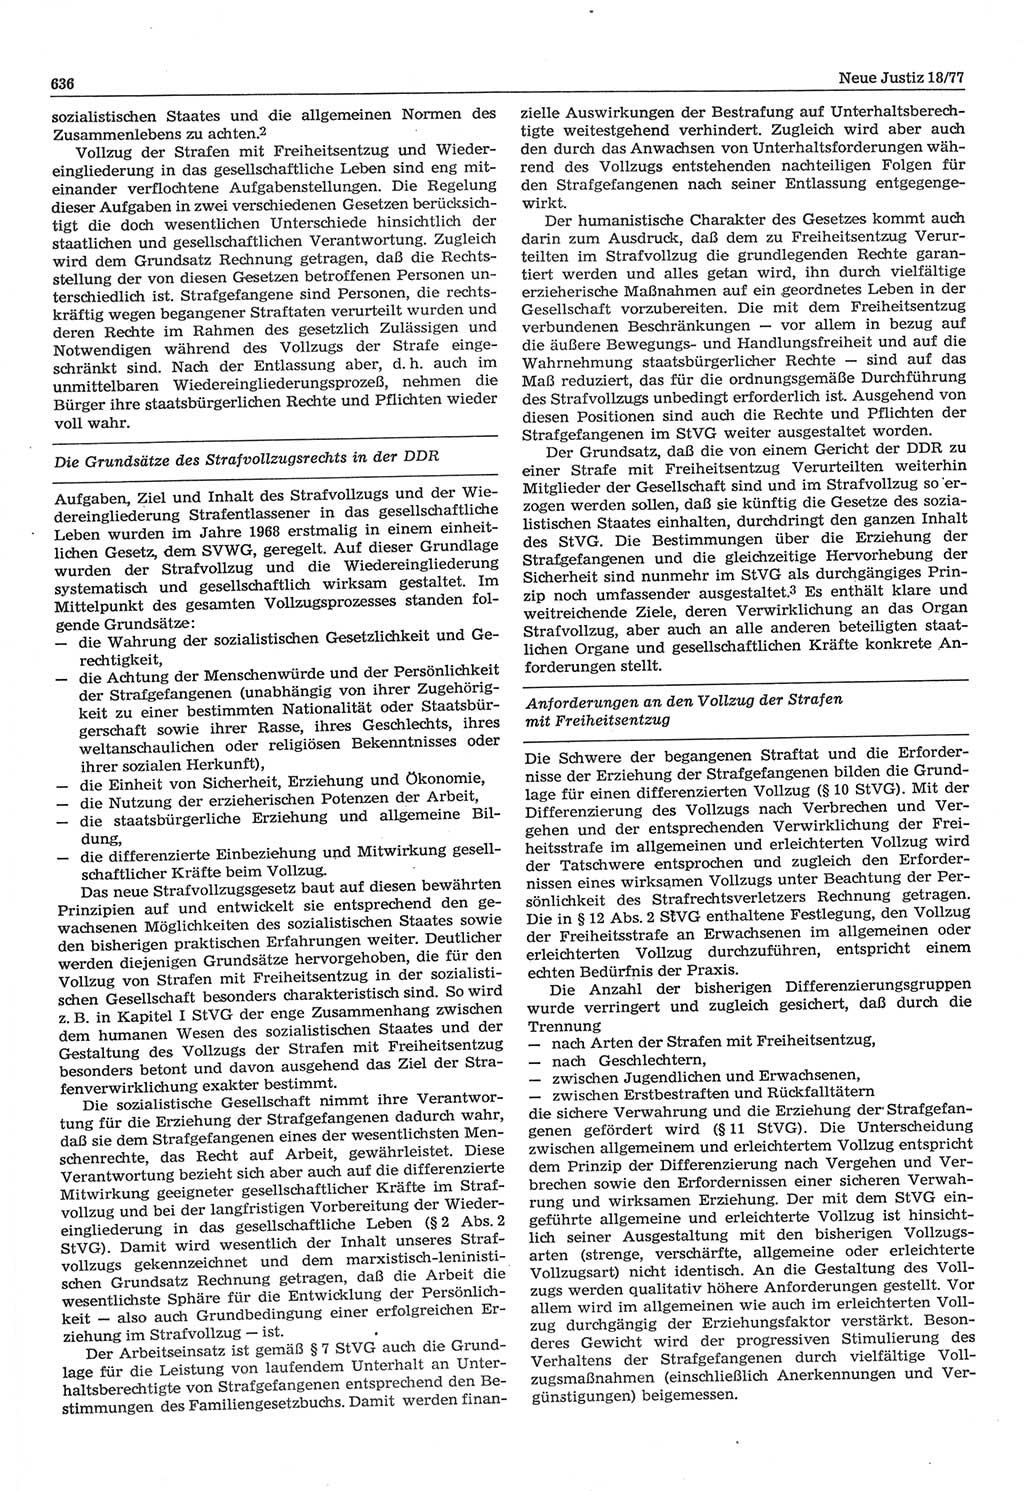 Neue Justiz (NJ), Zeitschrift für Recht und Rechtswissenschaft-Zeitschrift, sozialistisches Recht und Gesetzlichkeit, 31. Jahrgang 1977, Seite 636 (NJ DDR 1977, S. 636)